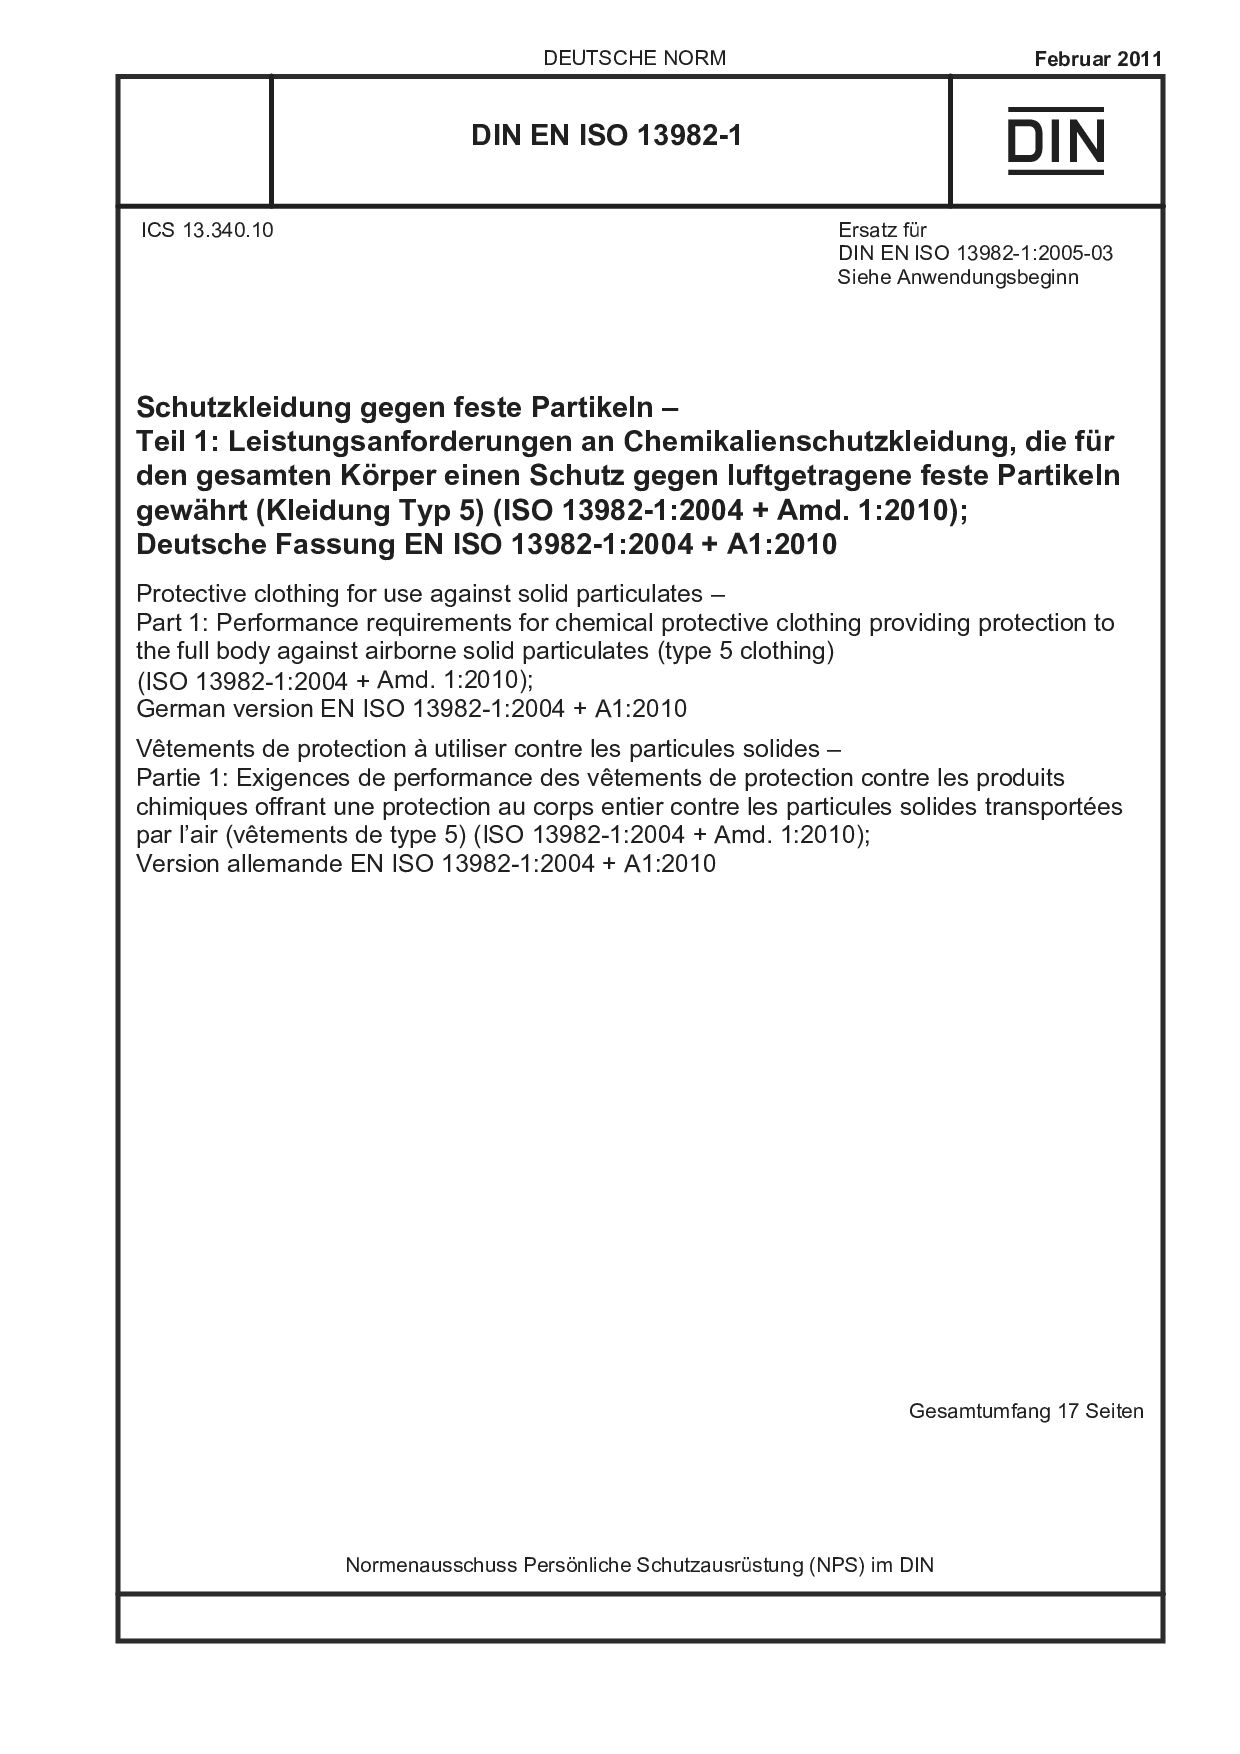 DIN EN ISO 13982-1:2011封面图